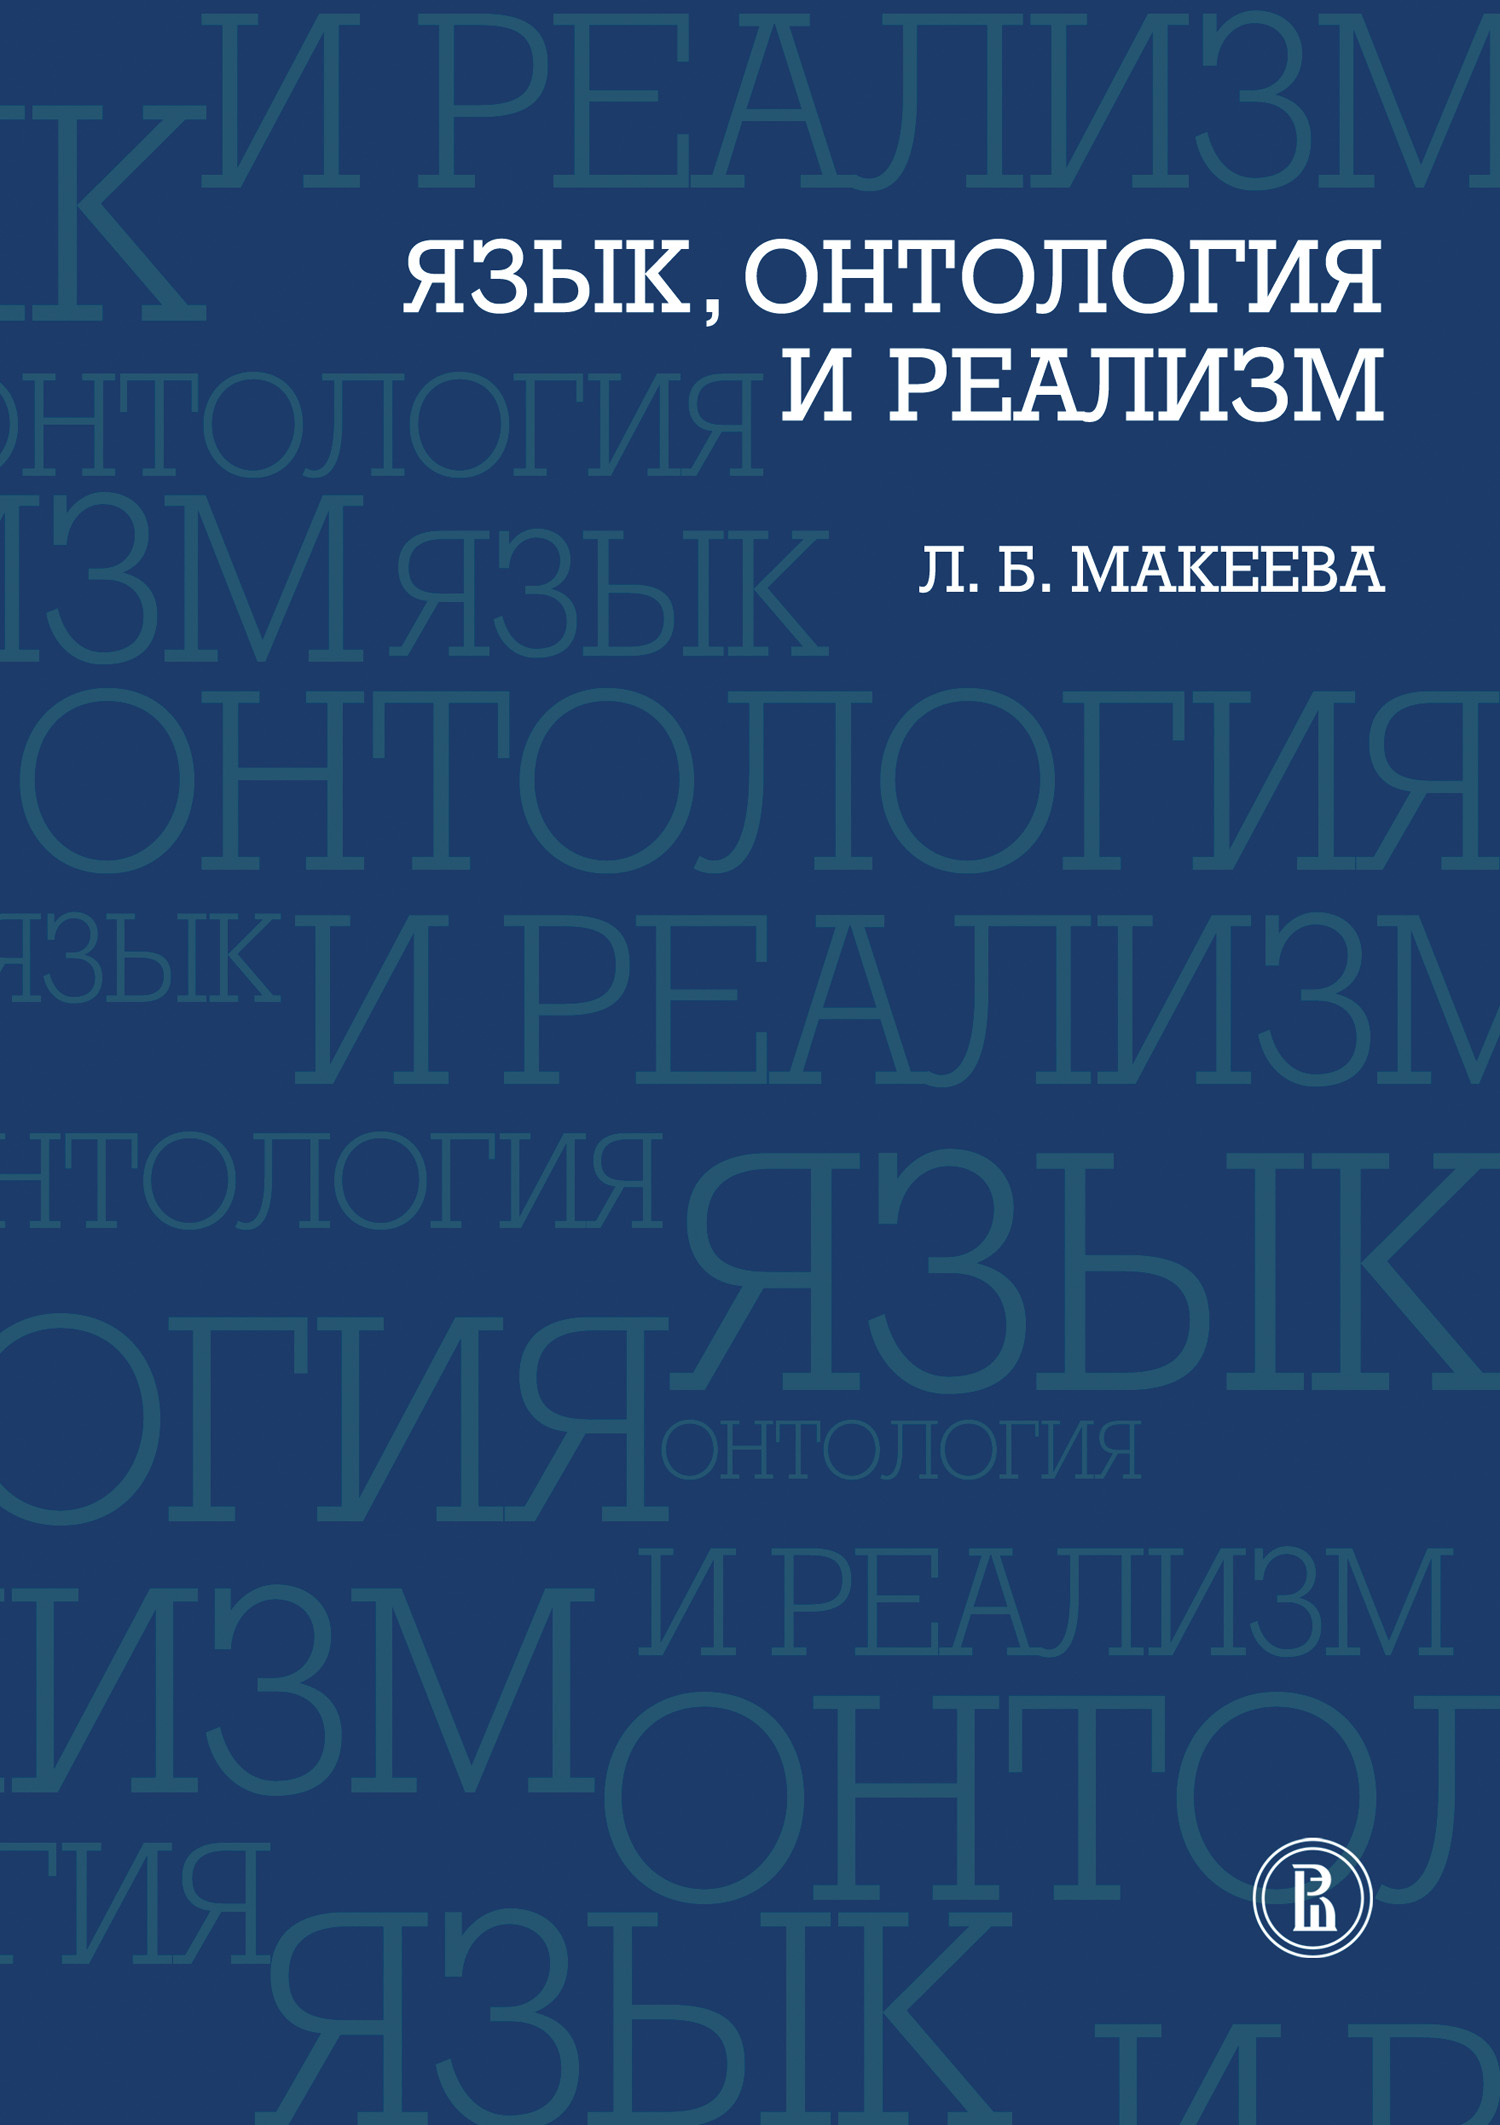 Книга Язык, онтология и реализм из серии , созданная Л. Макеева, может относится к жанру Культурология, Философия. Стоимость книги Язык, онтология и реализм  с идентификатором 653915 составляет 84.48 руб.